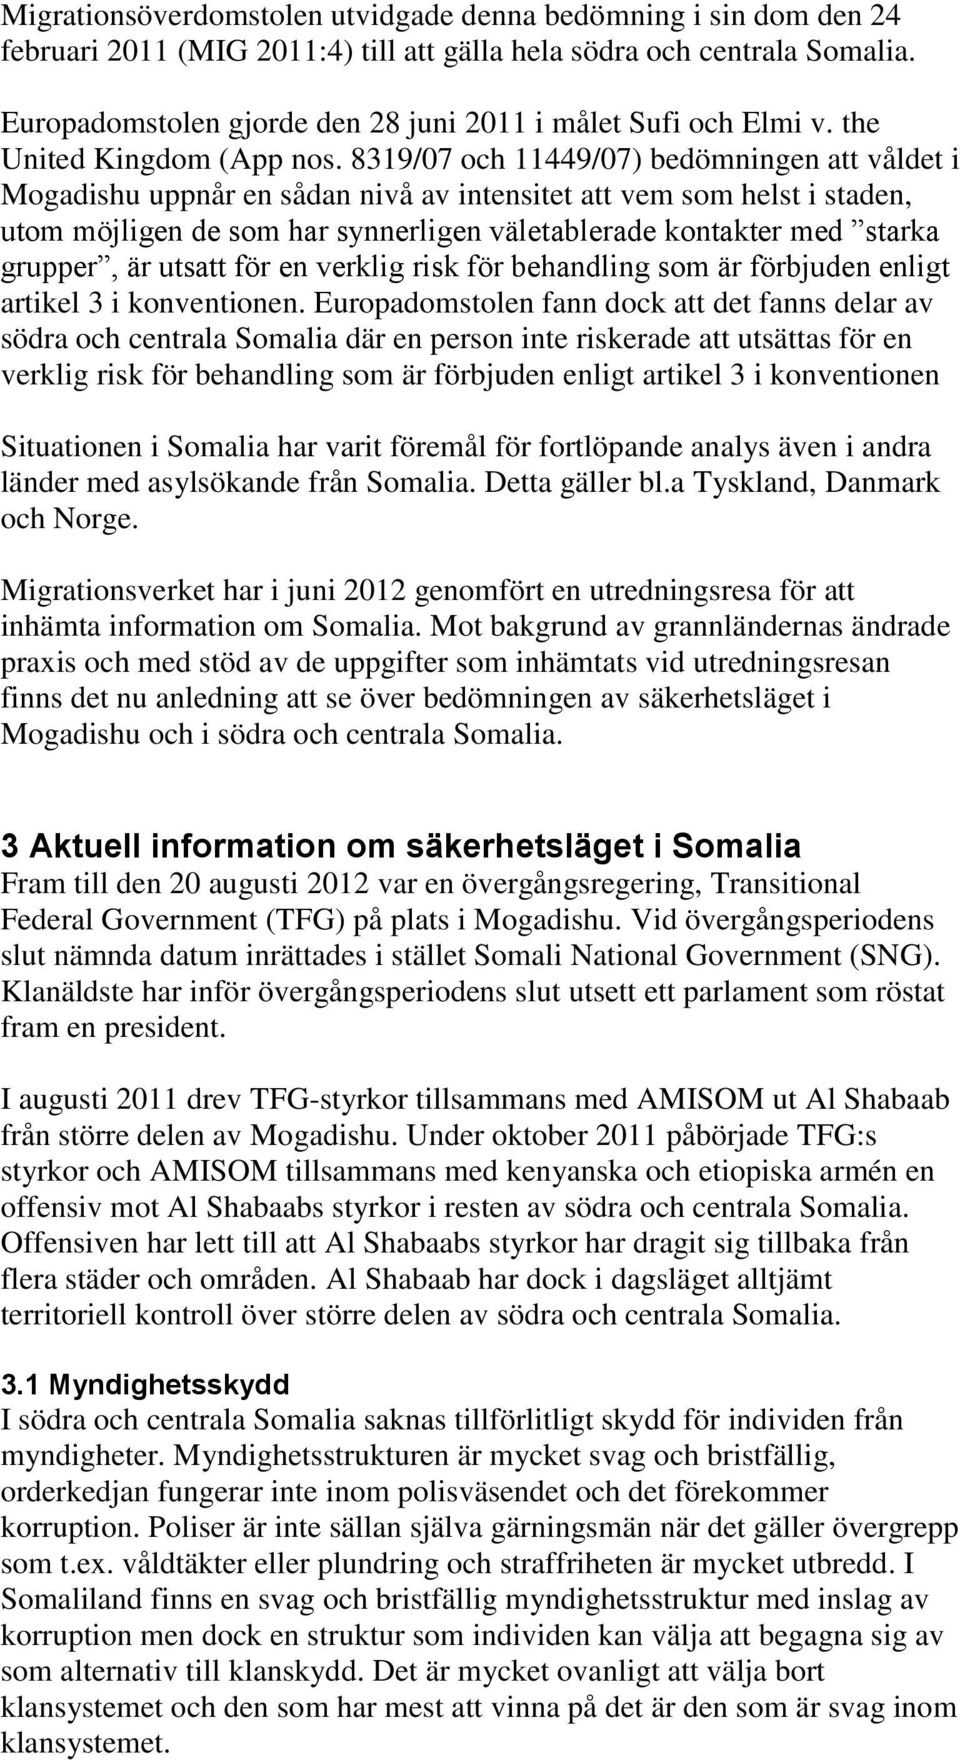 8319/07 och 11449/07) bedömningen att våldet i Mogadishu uppnår en sådan nivå av intensitet att vem som helst i staden, utom möjligen de som har synnerligen väletablerade kontakter med starka